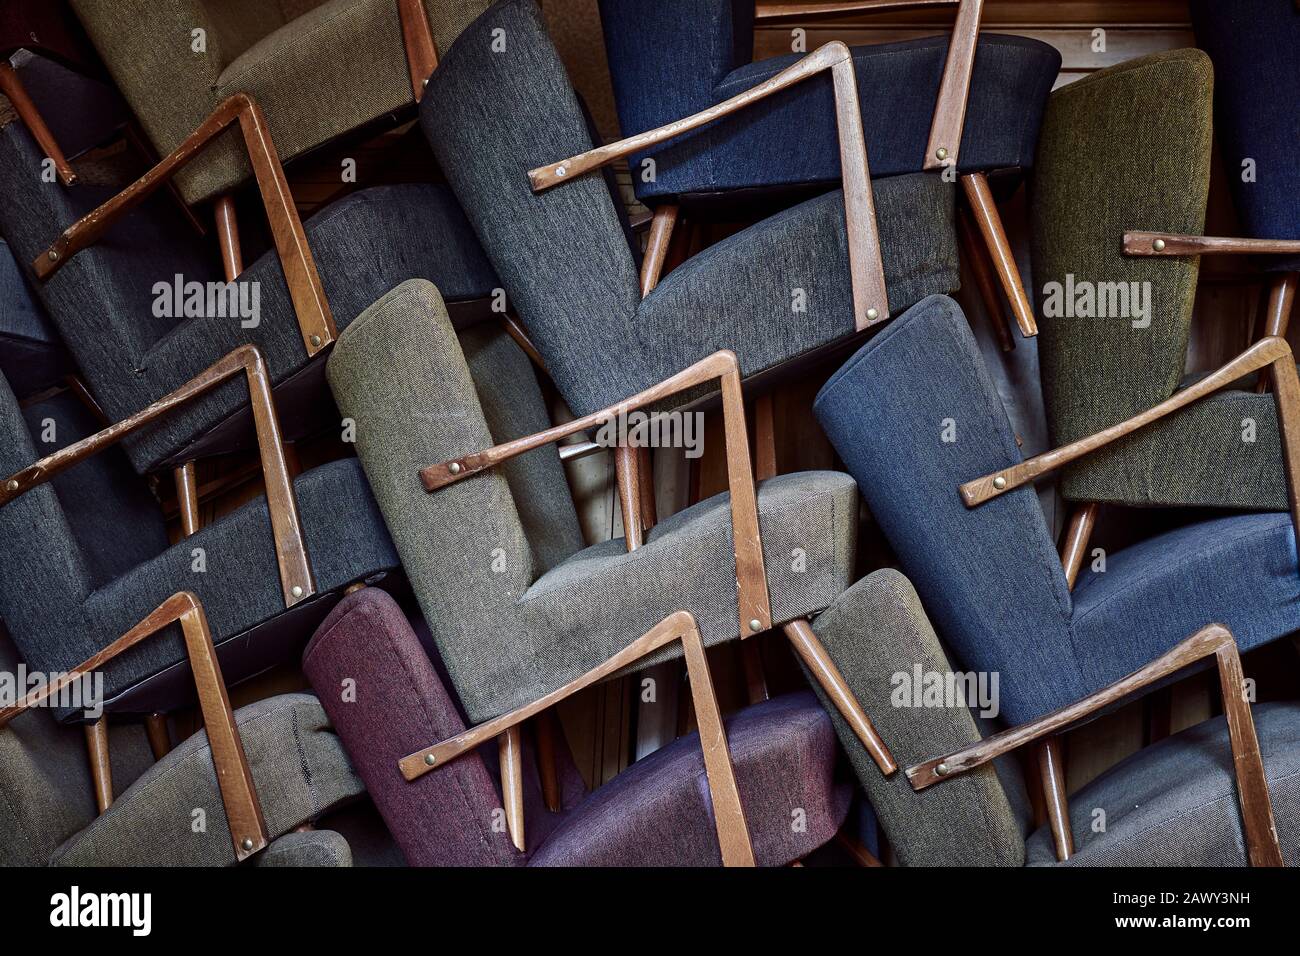 Fauteuils vintage empilés. Plein cadre et gros plan de nombreuses chaises colorées recouvertes de tissu et rembourrées avec poignées en bois empilées Banque D'Images